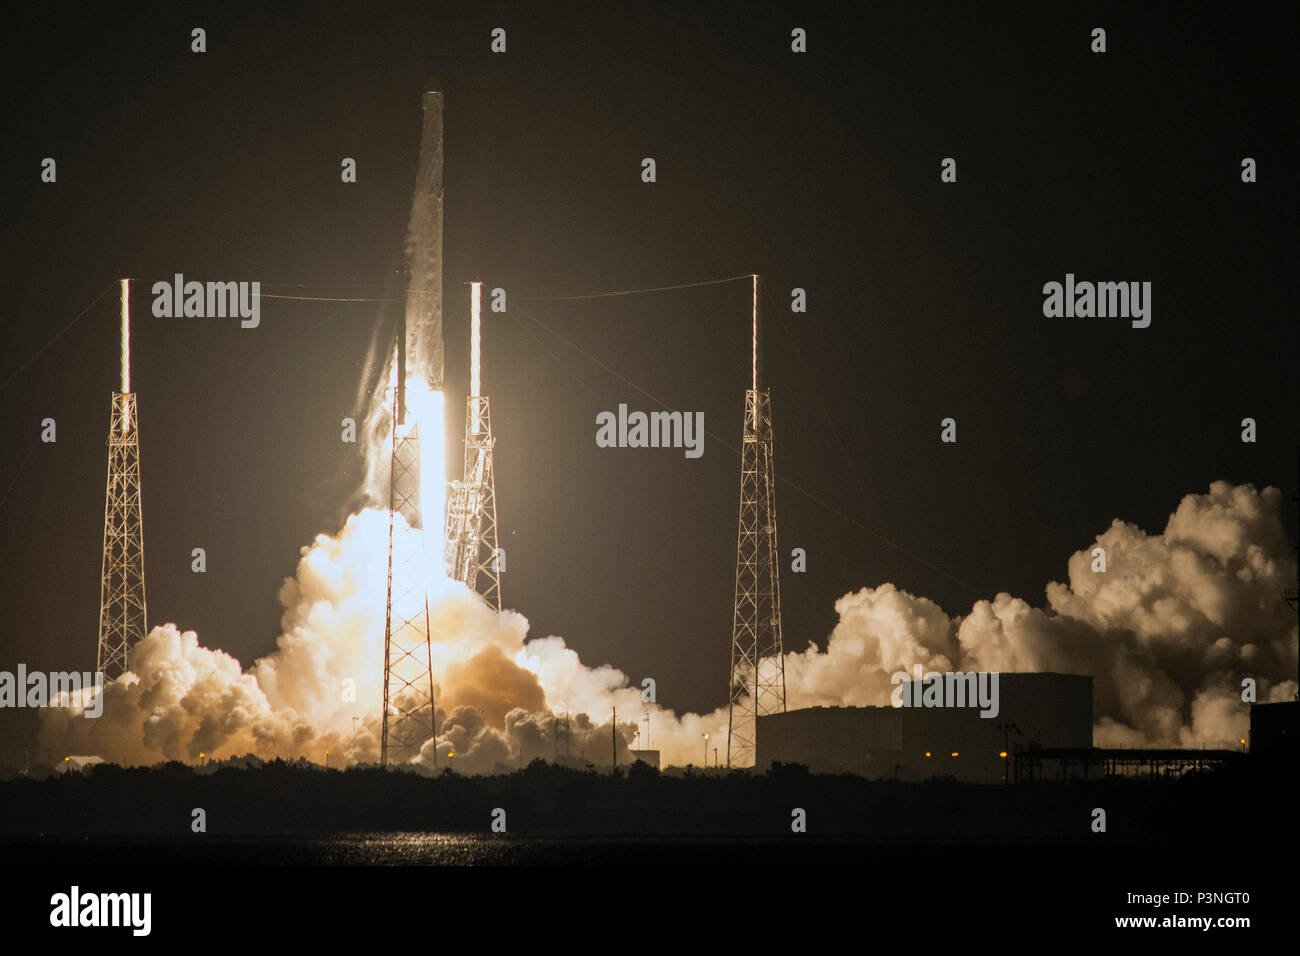 Il quarantacinquesimo spazio ala SpaceX supportato il successo del lancio di un Falcon 9 Dragon navicella spaziale diretto alla Stazione Spaziale Internazionale da Space Launch Complex 40 qui Luglio 18, 2016 a 12:45 a.m. ET. A circa otto minuti dopo il lancio, SpaceX sbarcati con successo il Falcon 9 della prima fase di booster a zona di atterraggio 1 su Cape Canaveral Air Force Station, Fla.Questo Falcon 9 Dragon lancio fu il XIII importante operazione di lancio per la gamma orientale questo anno e segna la nona missione contratta da SpaceX al di sotto della NASA di rialimentazione commerciale contratto di servizi. (Foto di cortesia da SpaceX) Foto Stock